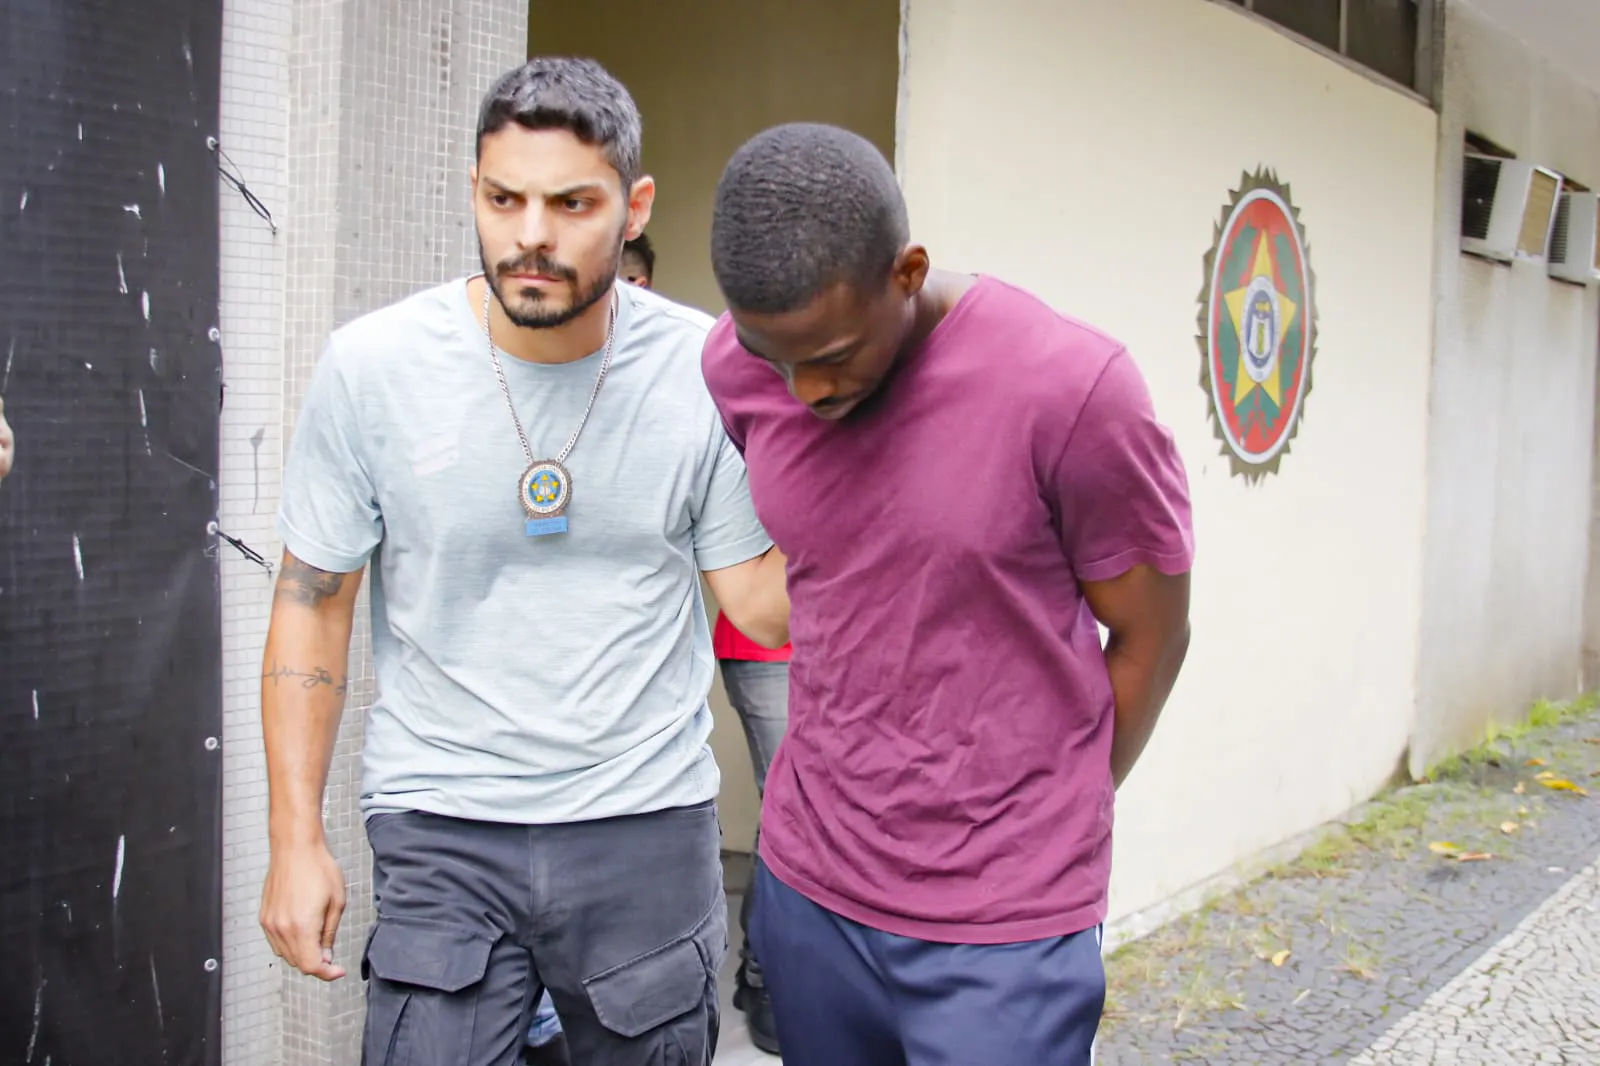 Ilias Olachegoun Adeniyi Adjafo, pai da menina Aoulath Alyssah, foi preso e transferido para Benfica